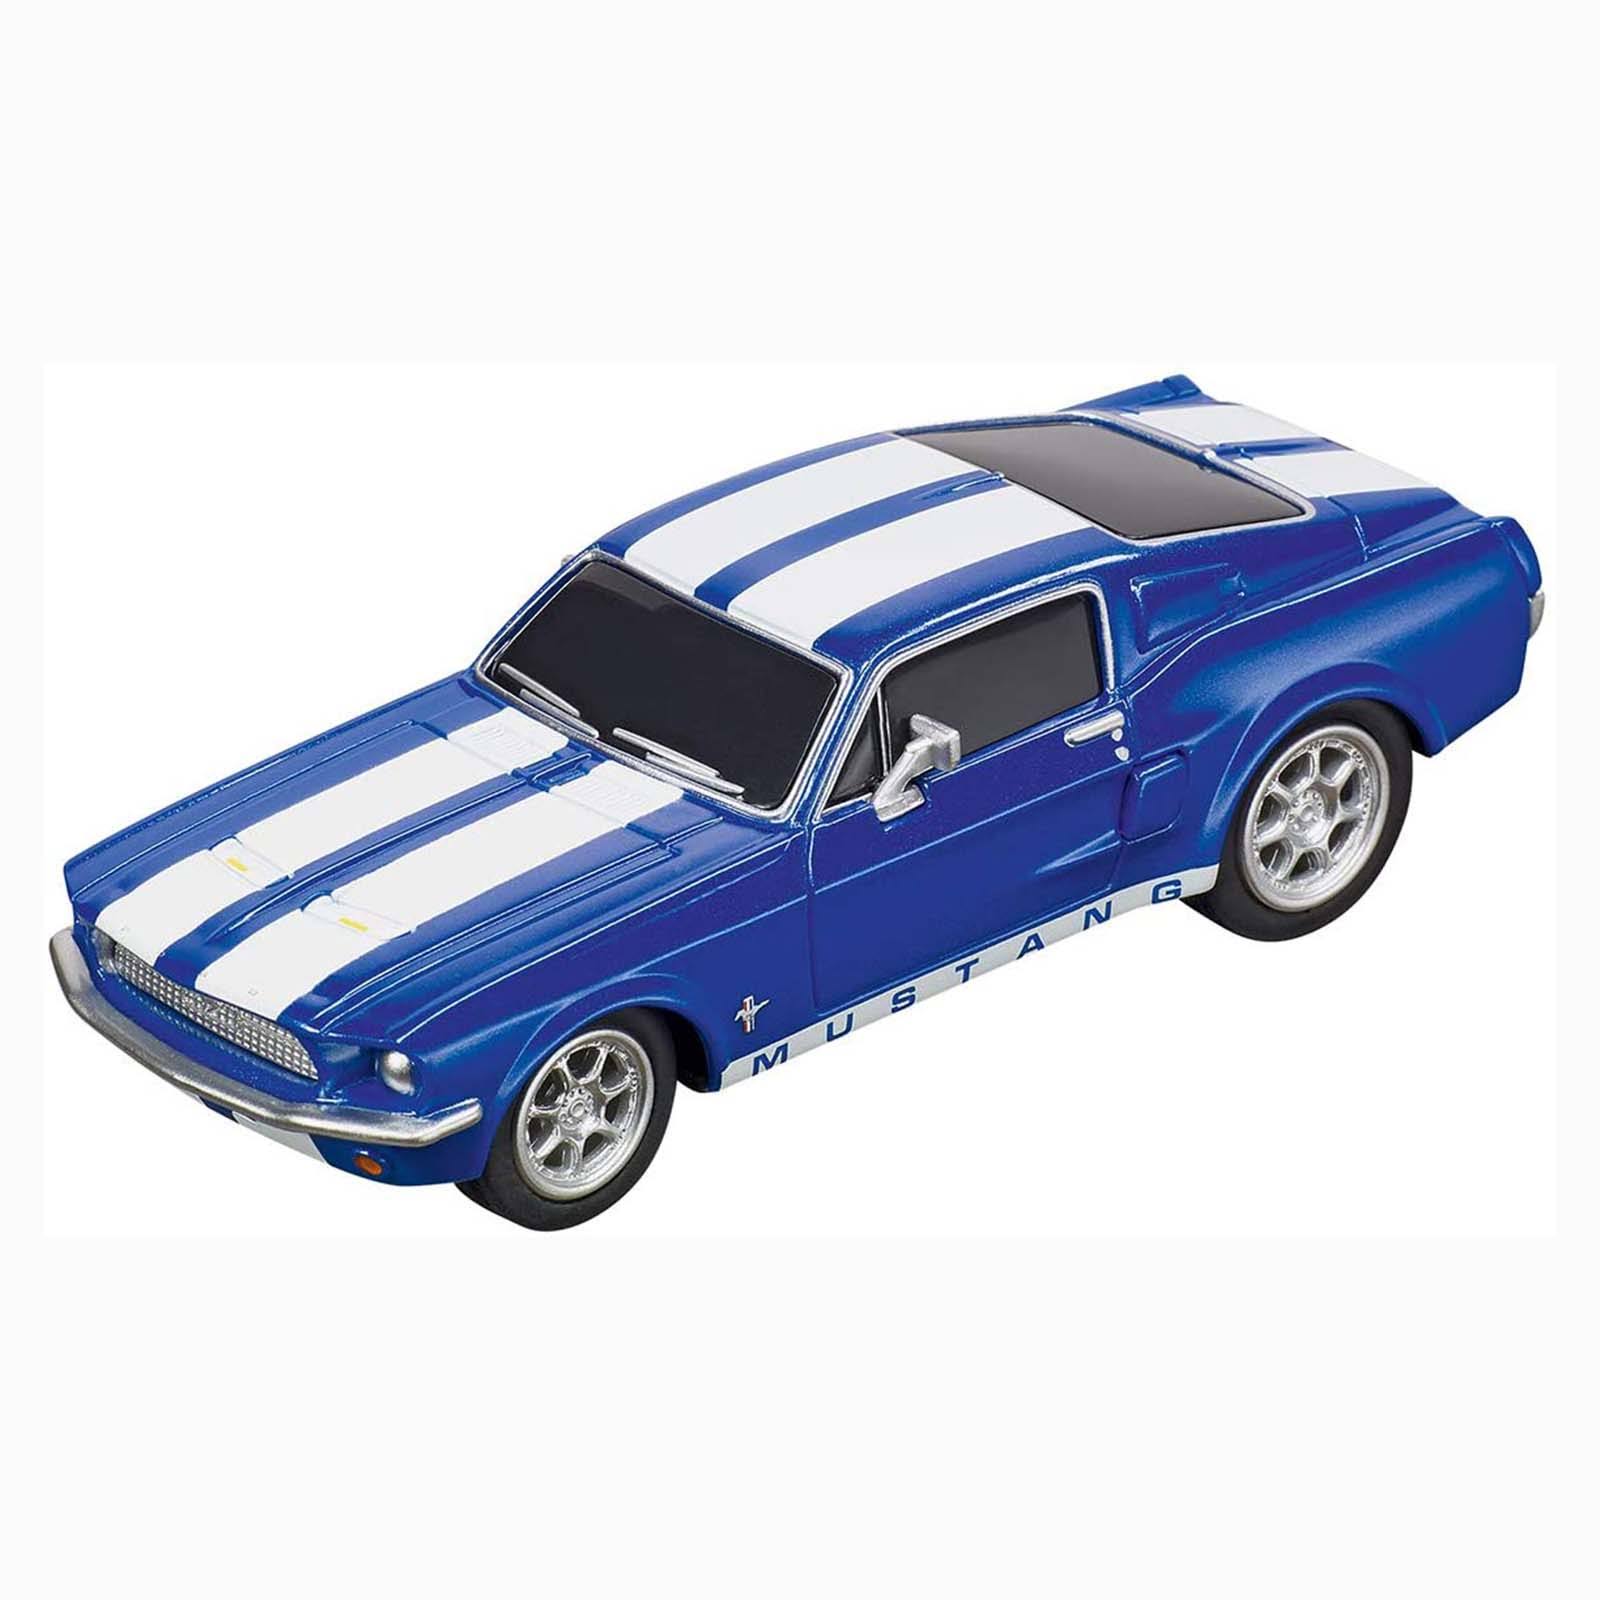 Carrera 64146 Ford Mustang '67 Racing Blue Go Analog Slot Car Racing Vehicle